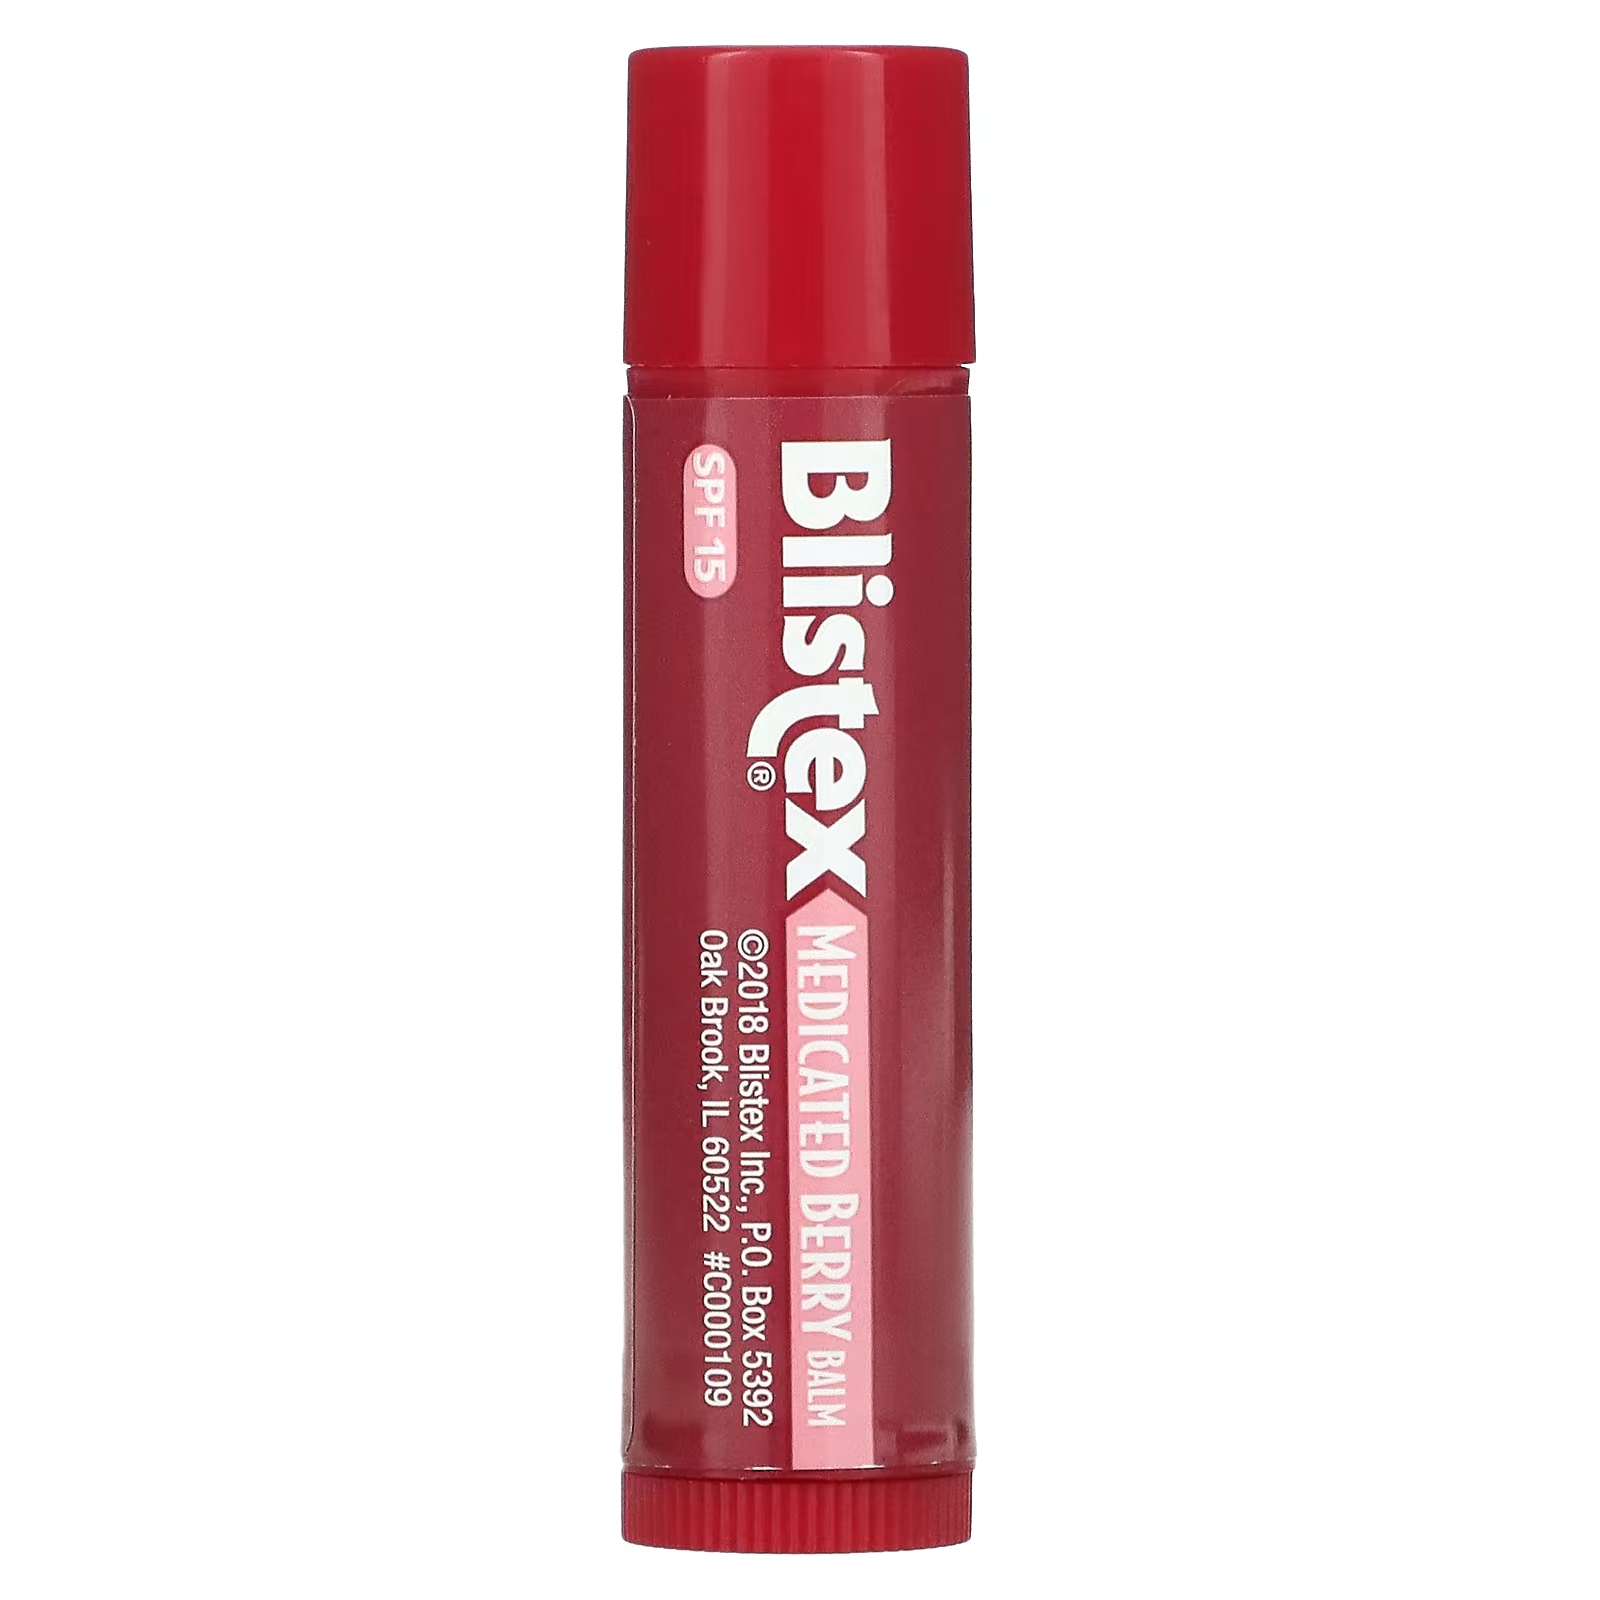 Blistex Лекарственное средство для защиты губ/солнцезащитное средство SPF 15 Berry, 0,15 унции (4,25 г) vanicream защитное средство для губ и солнцезащитное средство spf 30 10 г 0 35 унции